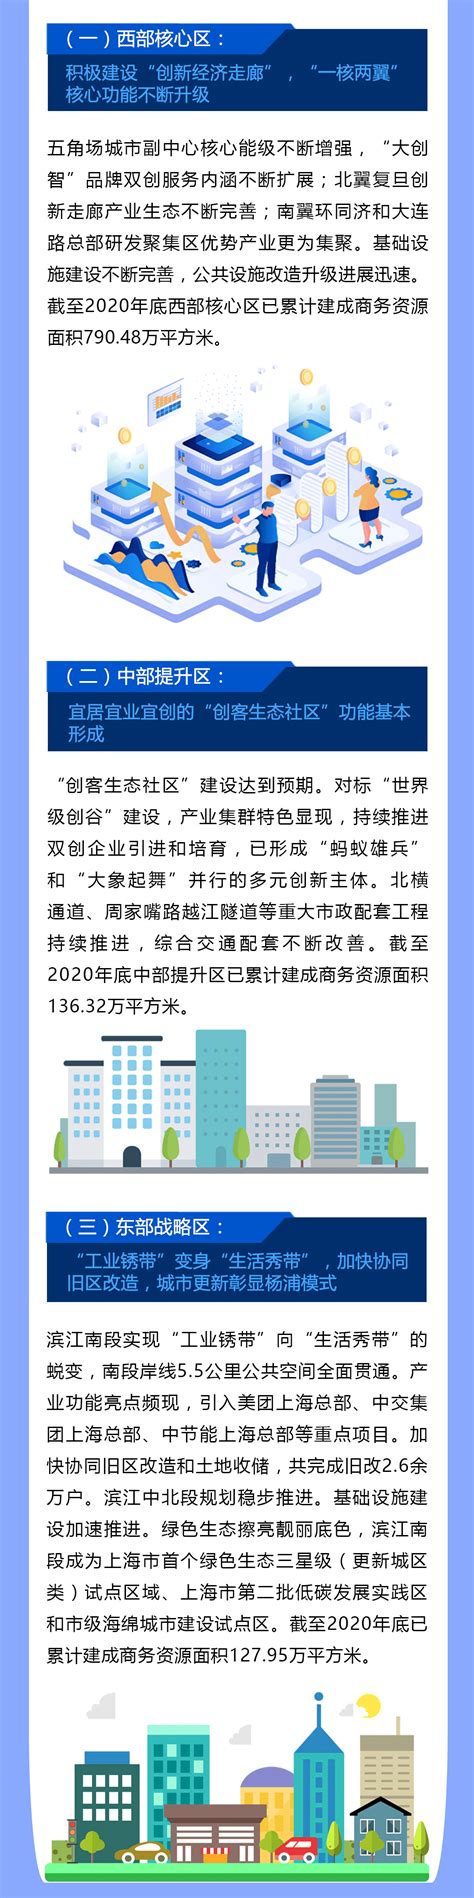 又一个新园区在杨浦滨江落地，在这里可以看到在线新经济的未来 - 周到